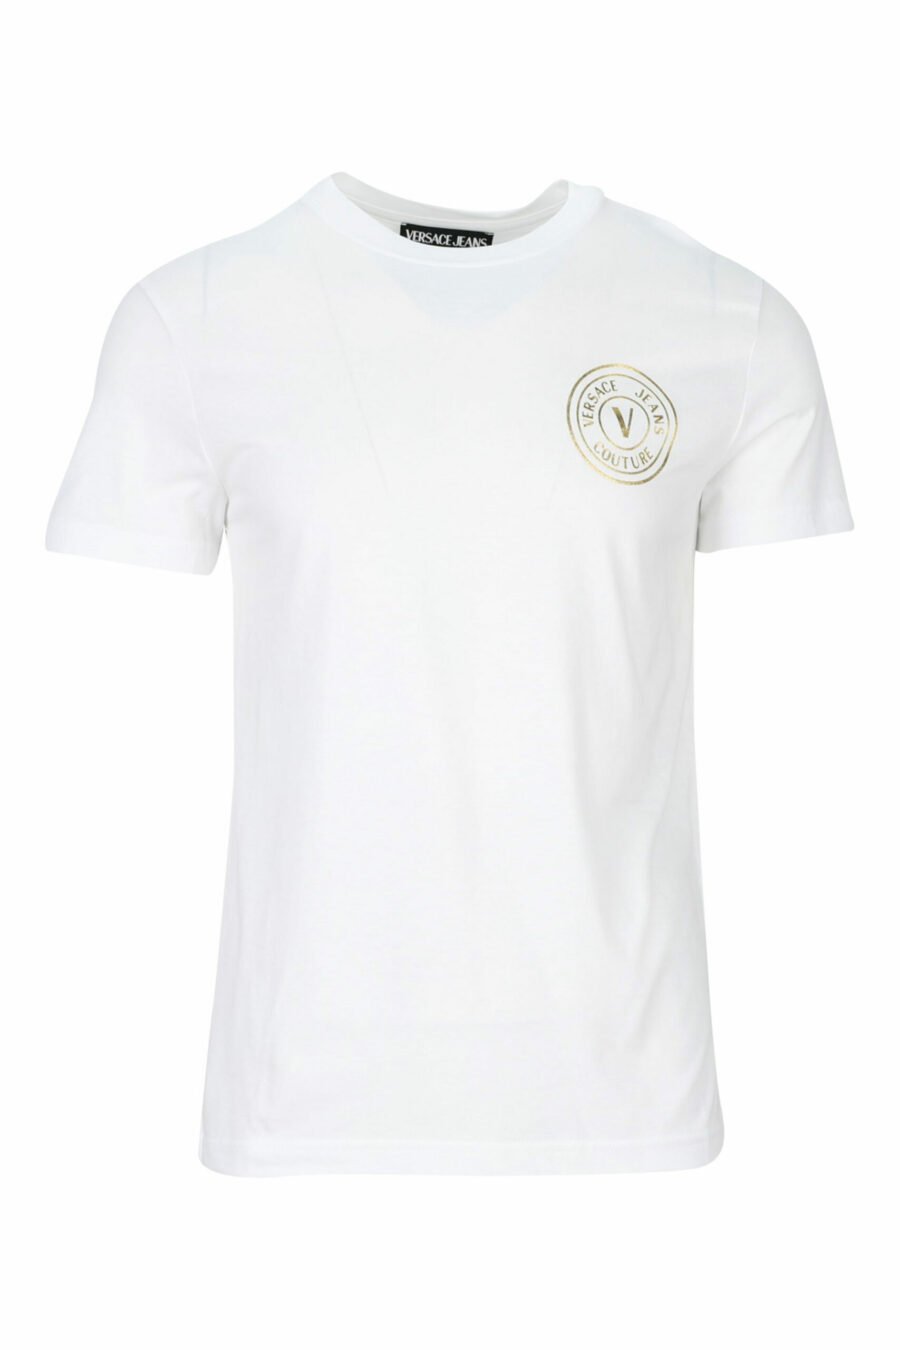 Weißes T-Shirt mit kreisförmigem Mini-Logo in Gold - 8052019468397 skaliert